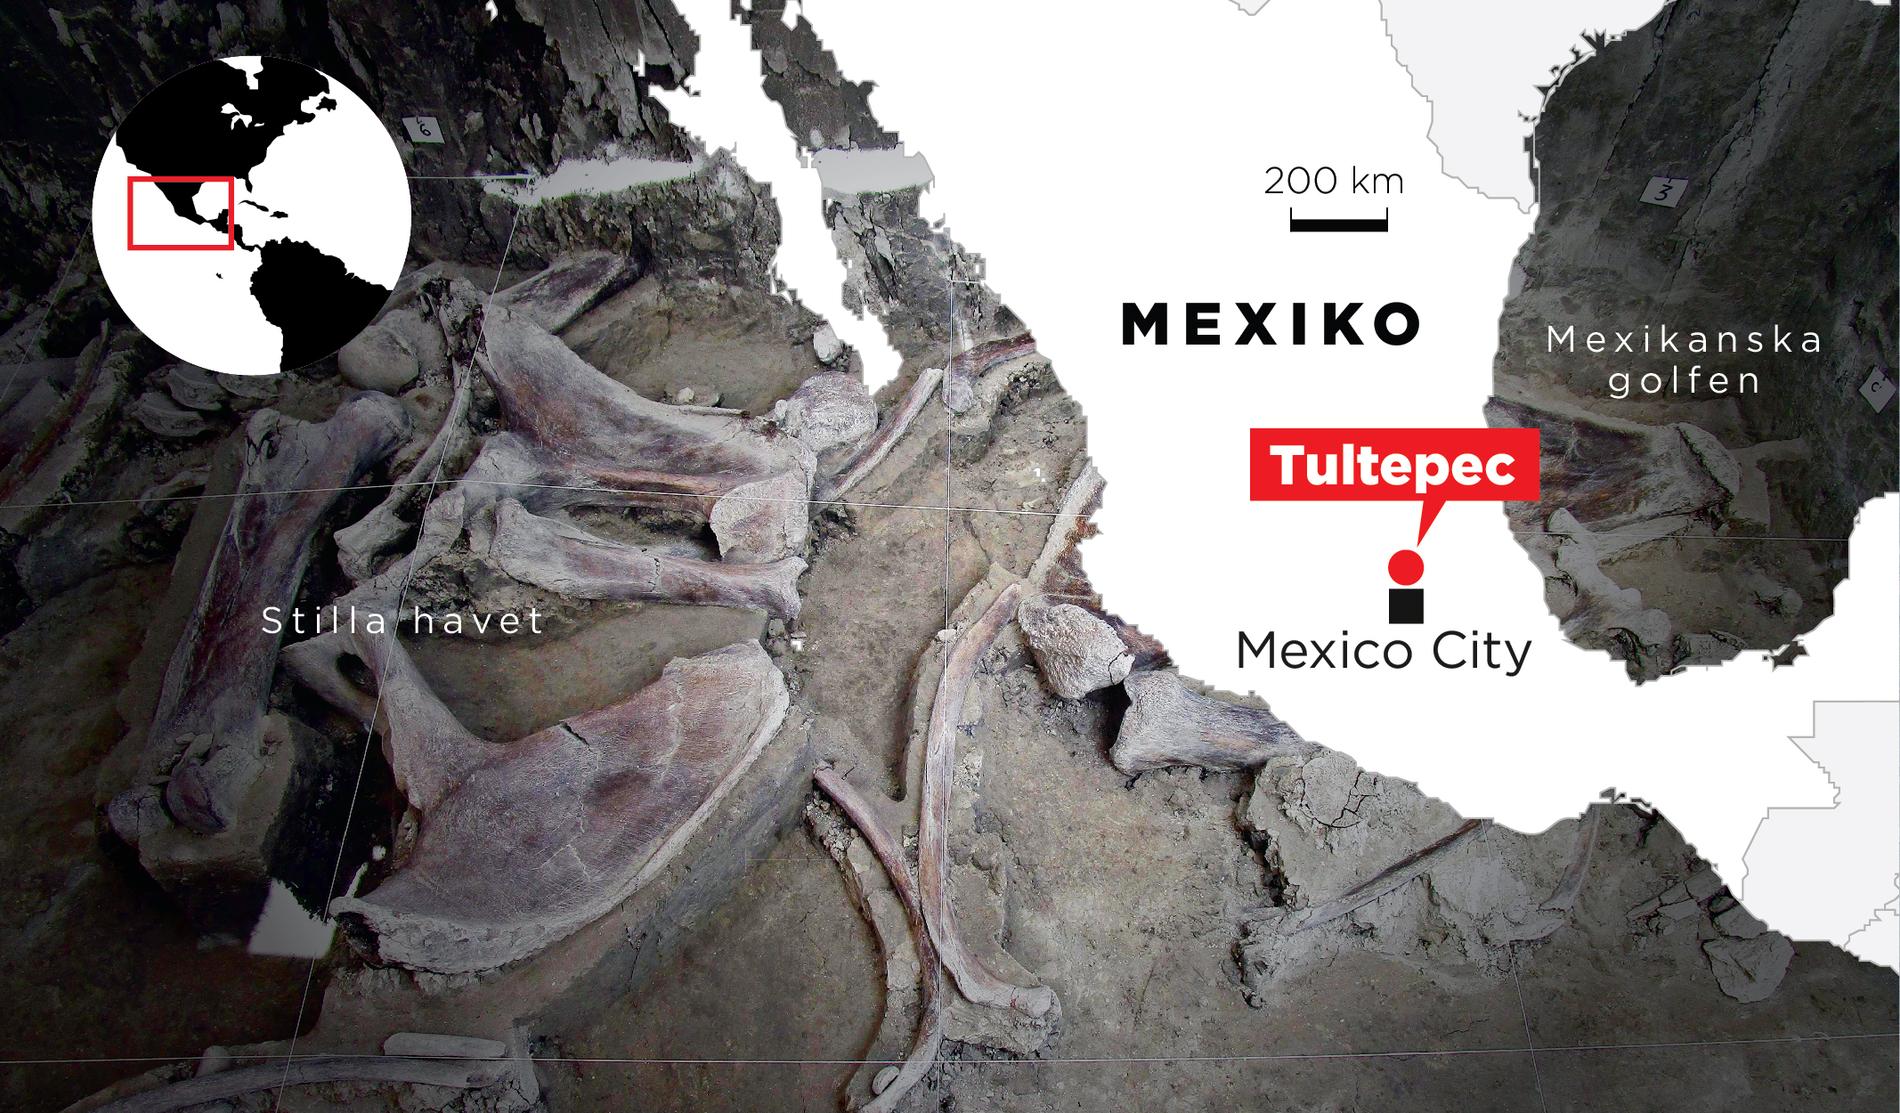 Skellettdelar från minst 14 mammutar har hittats i Tultepec i Mexiko.